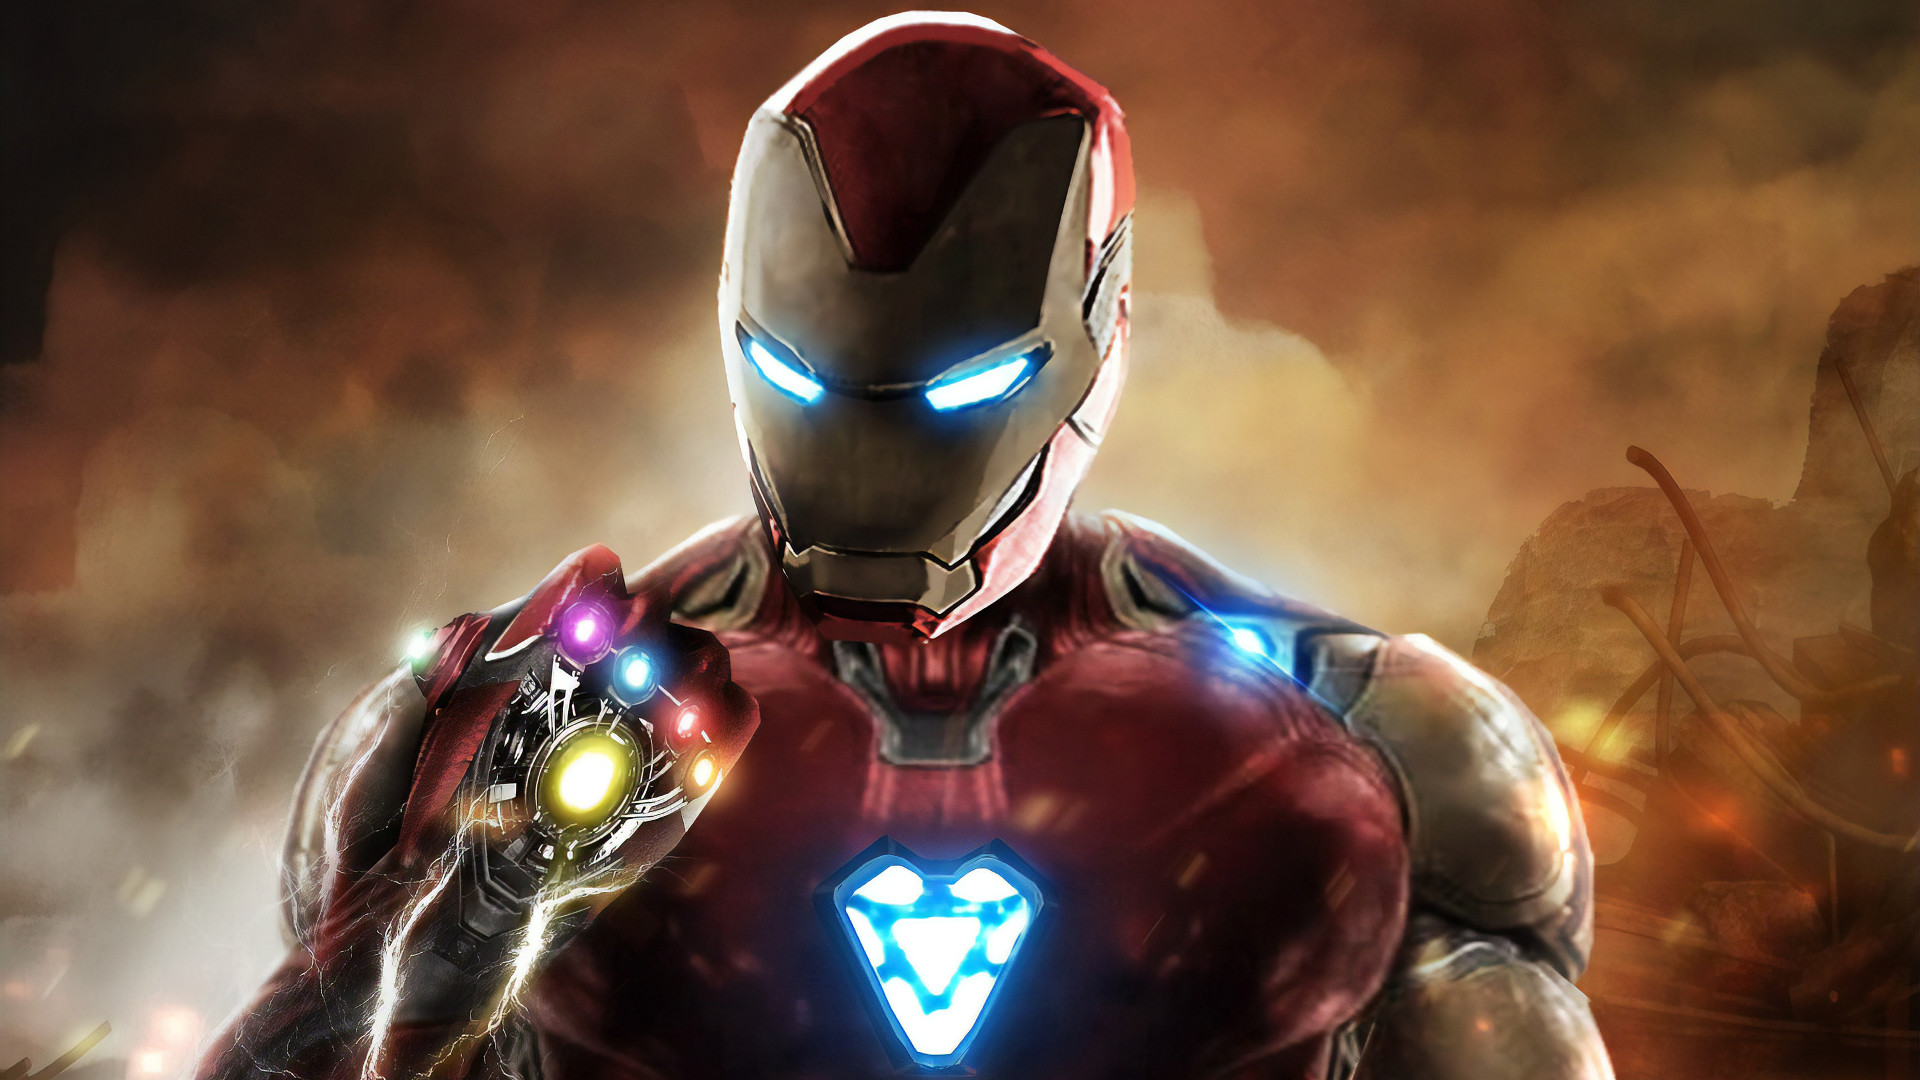 iron man fondos de pantalla hd 1080p,superhéroe,personaje de ficción,hombre de acero,héroe,cg artwork